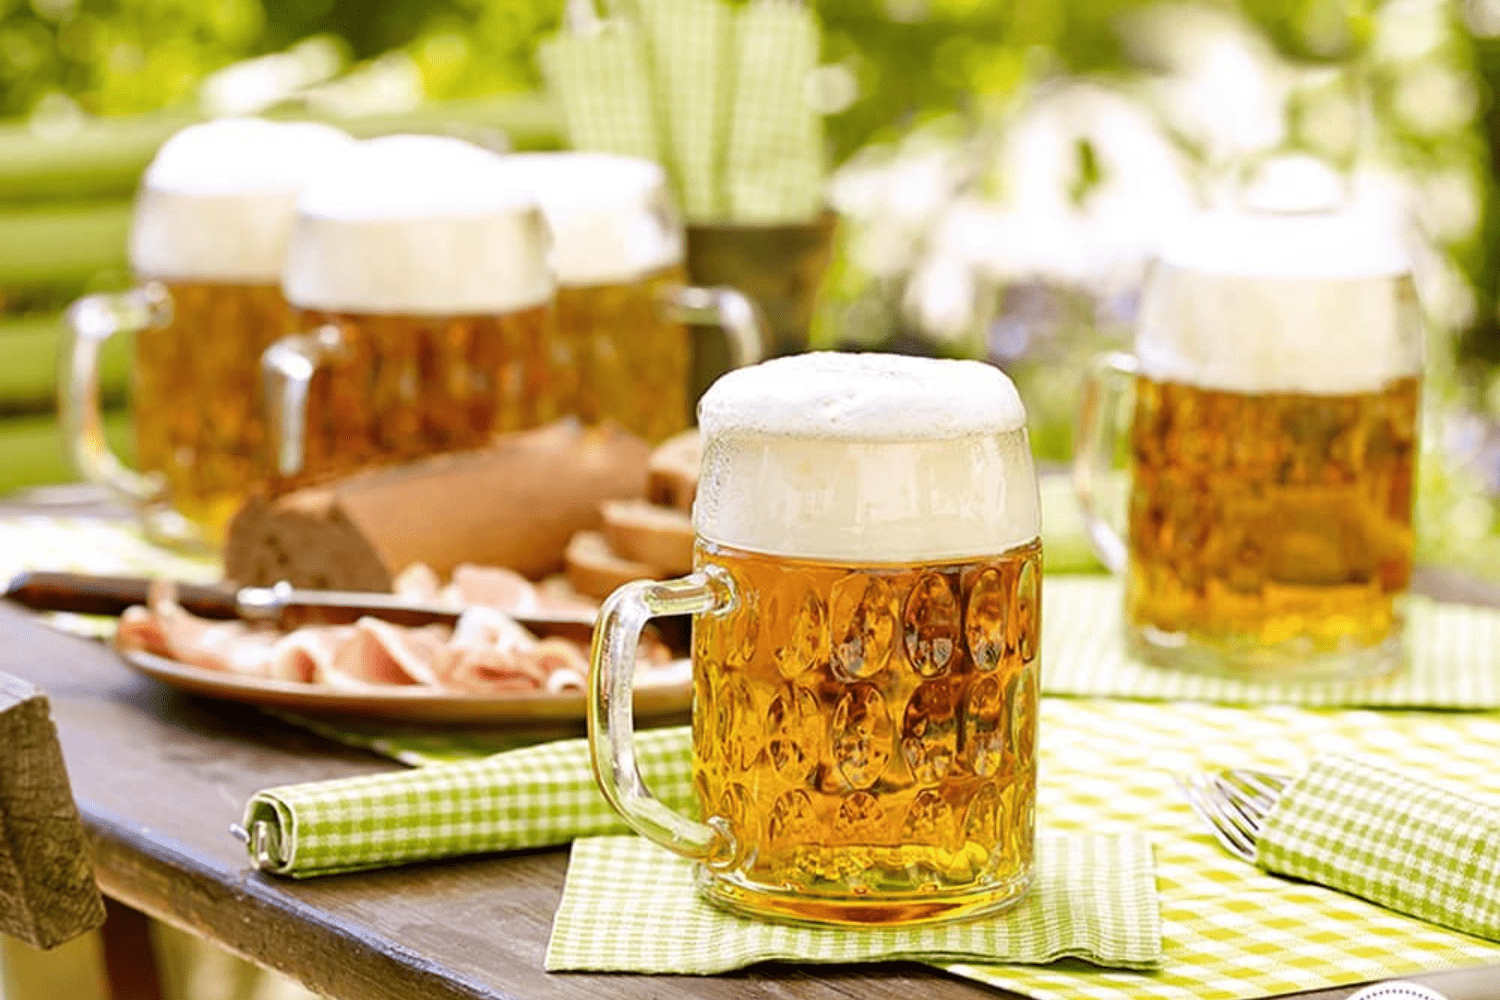 Bia Đức: Hướng Dẫn Chi Tiết Về Các Loại Bia Đức Truyền Thống